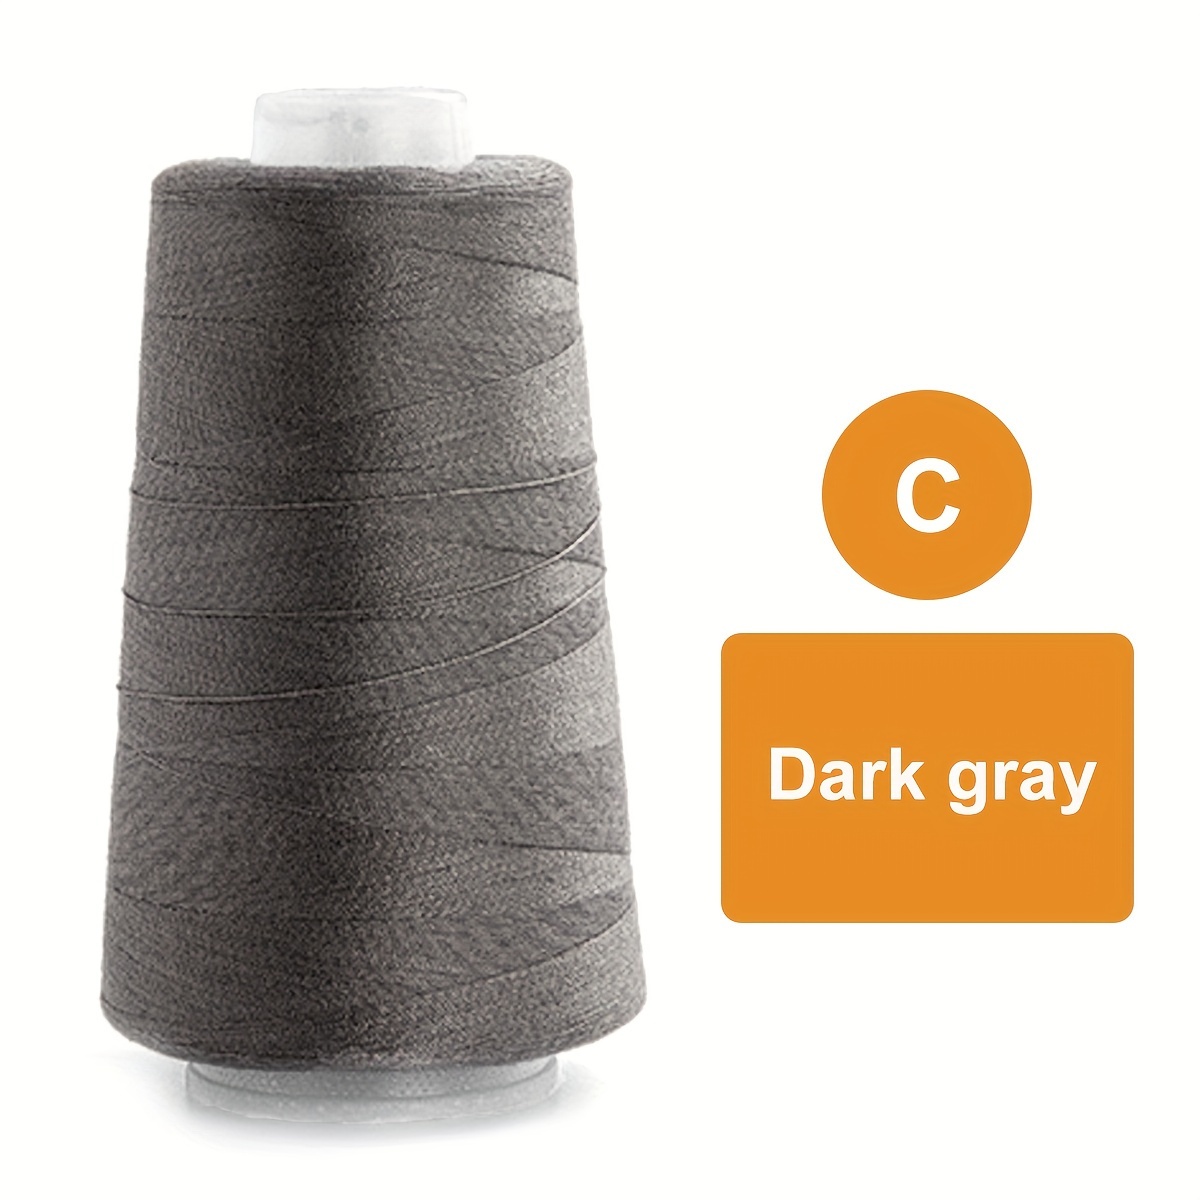 Dark Gray-1 Pc